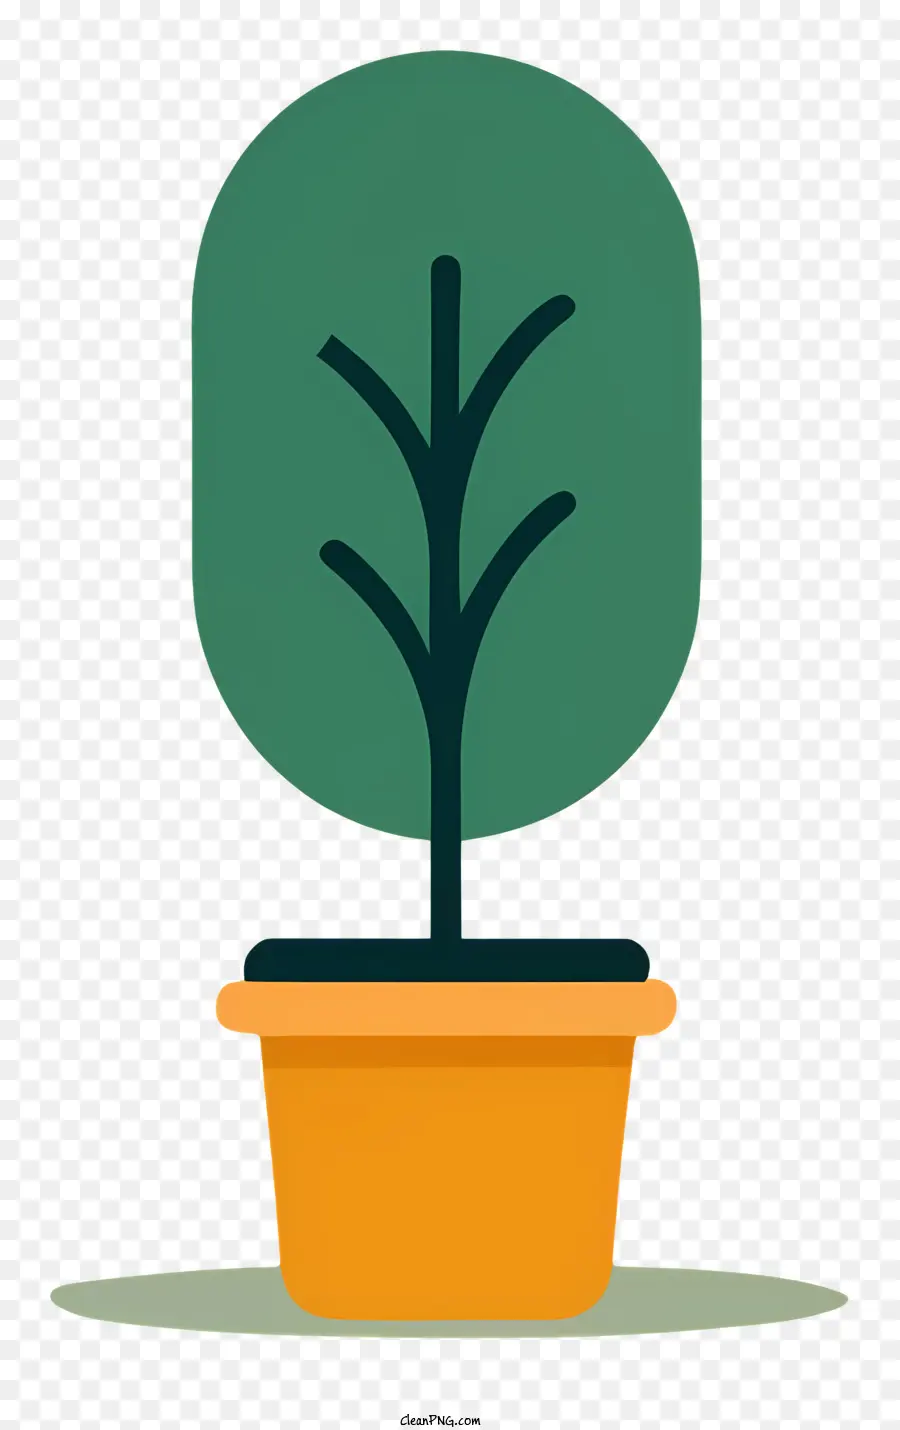 Cây trồng cây nhỏ cây tròn cây xanh lá xanh lá cây - Hình minh họa của cây chậu nhỏ trên bàn